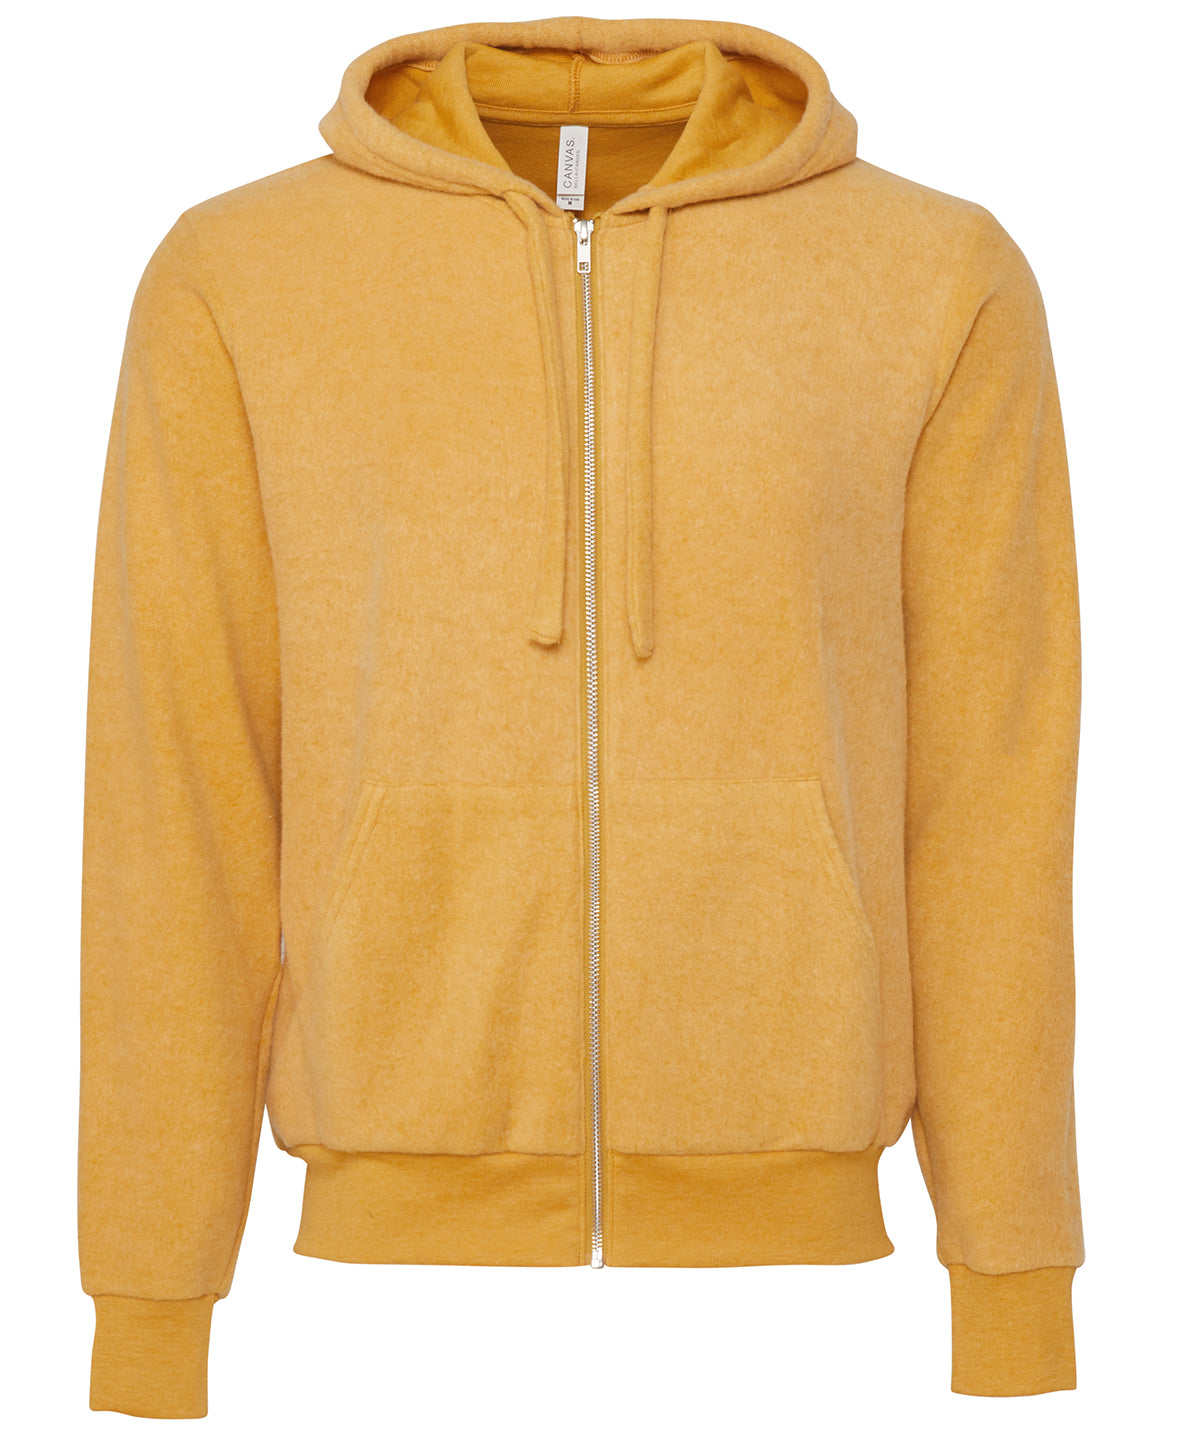 Personalised Hoodies - Heather Grey Bella Canvas Unisex sueded fleece full-zip hoodie